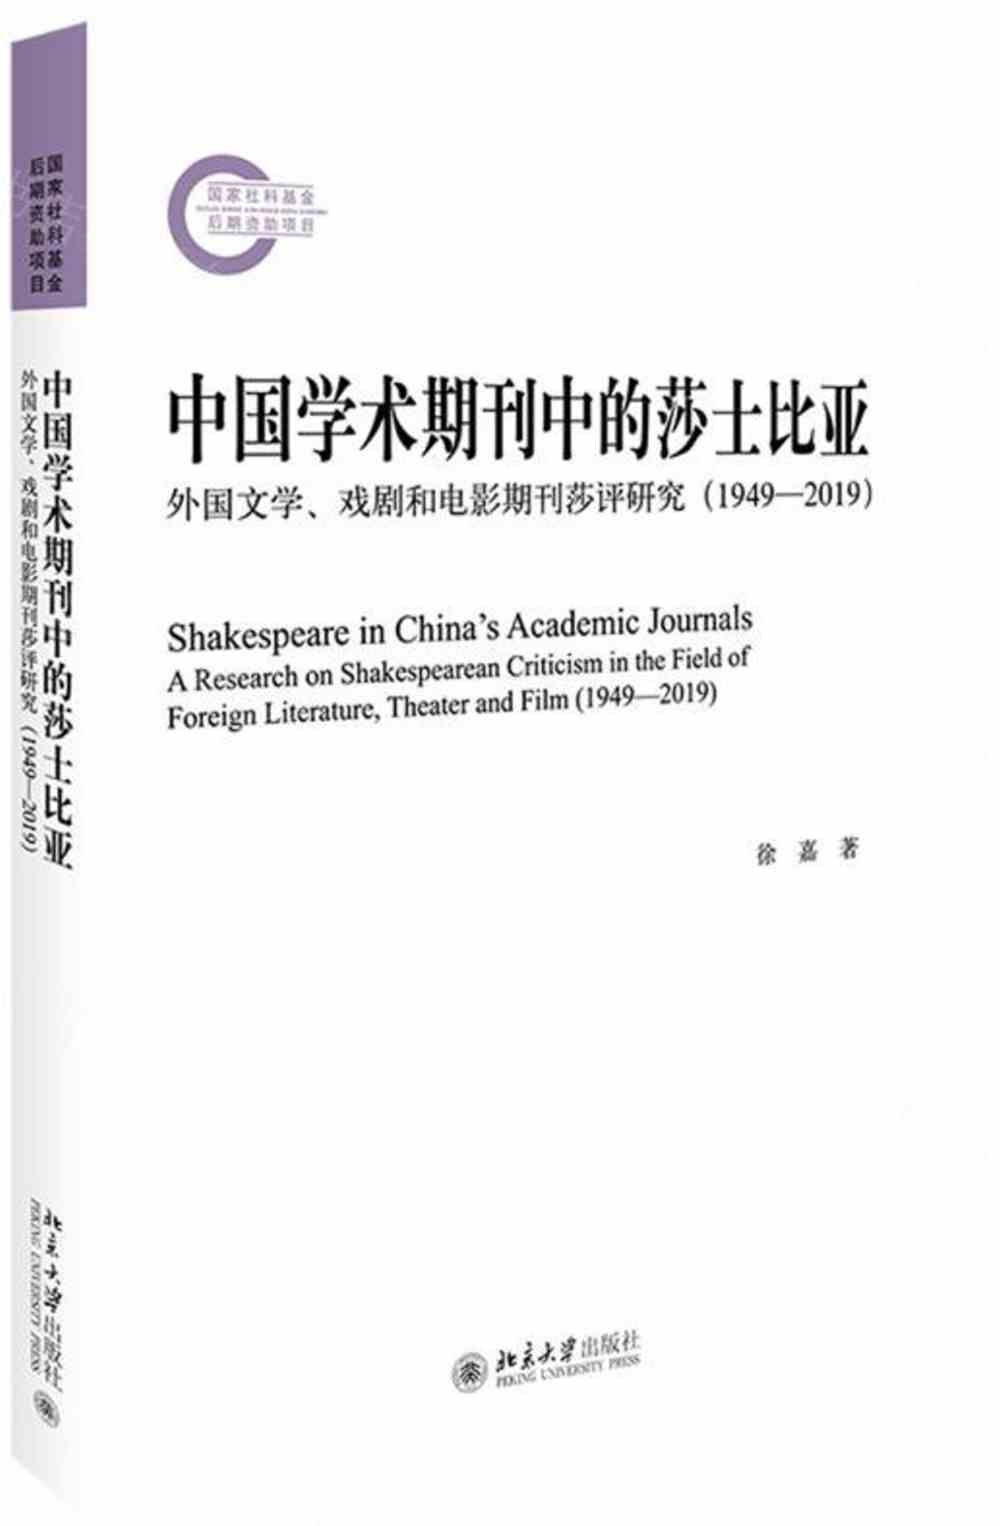 中國學術期刊中的莎士比亞：外國文學、戲劇和電影期刊莎評研究（1949-2019）